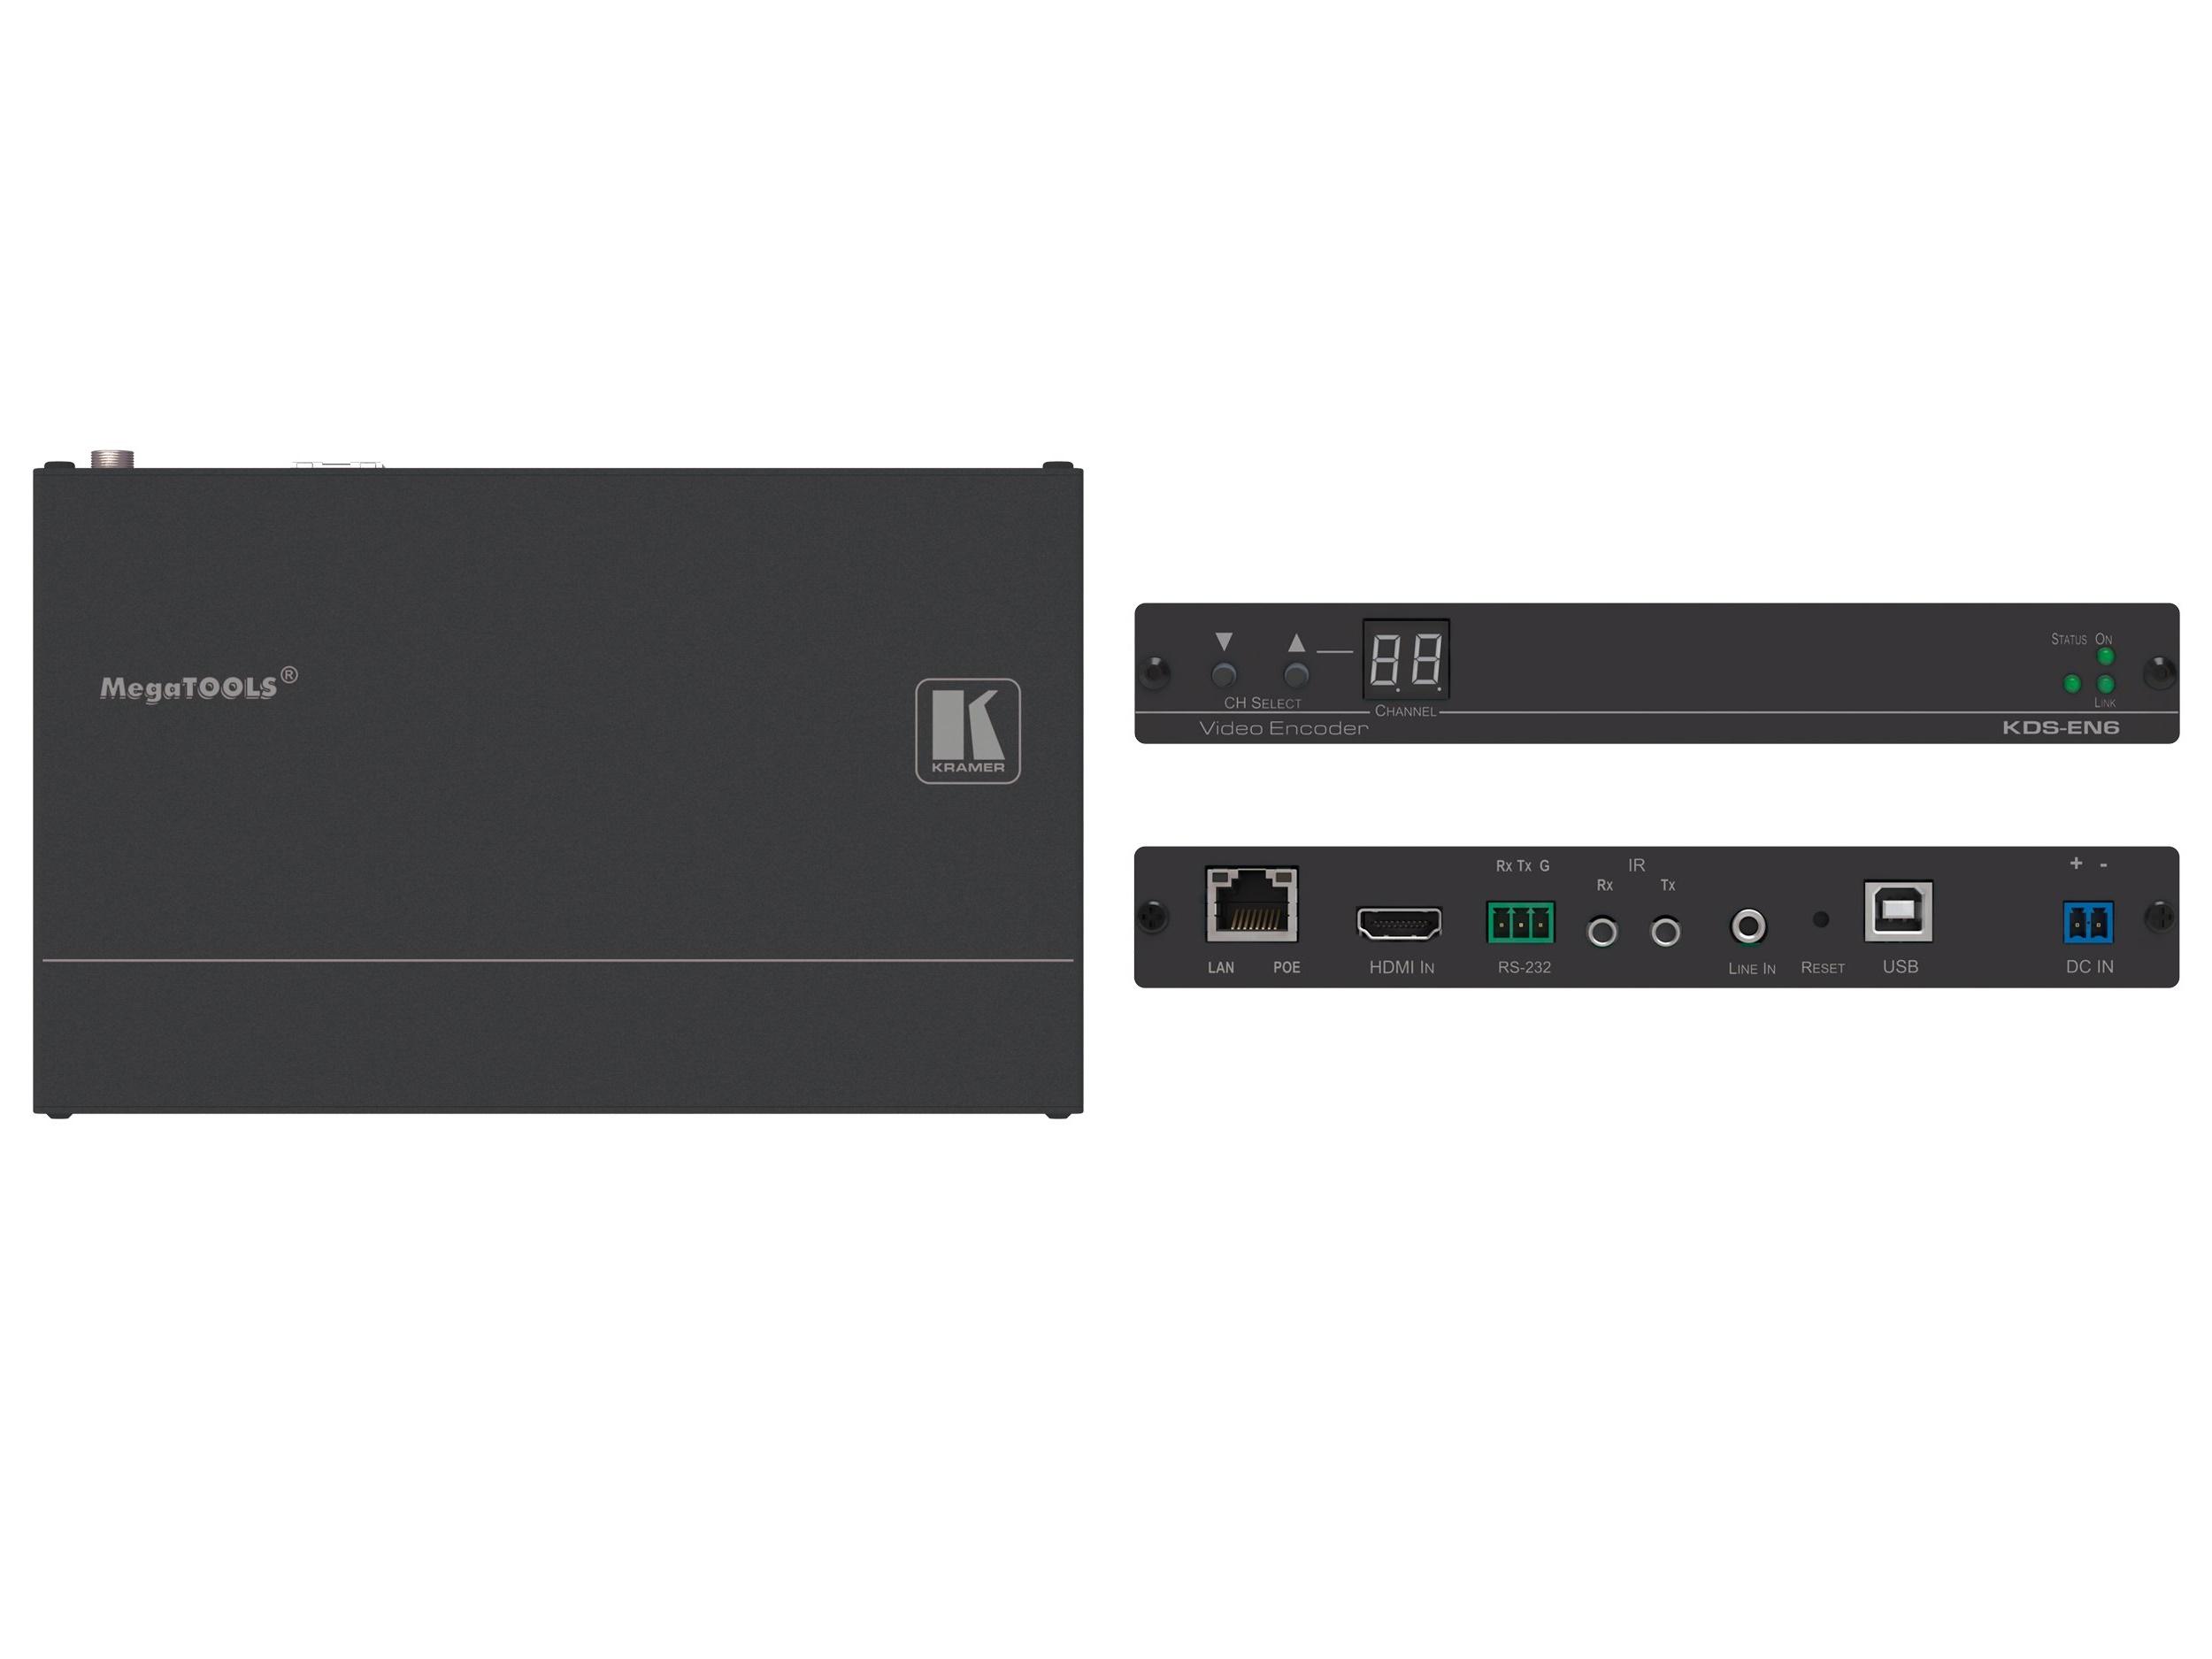 KDS-EN6 4K/60 4x2x0 HDCP 2.2 Video Encoder by Kramer